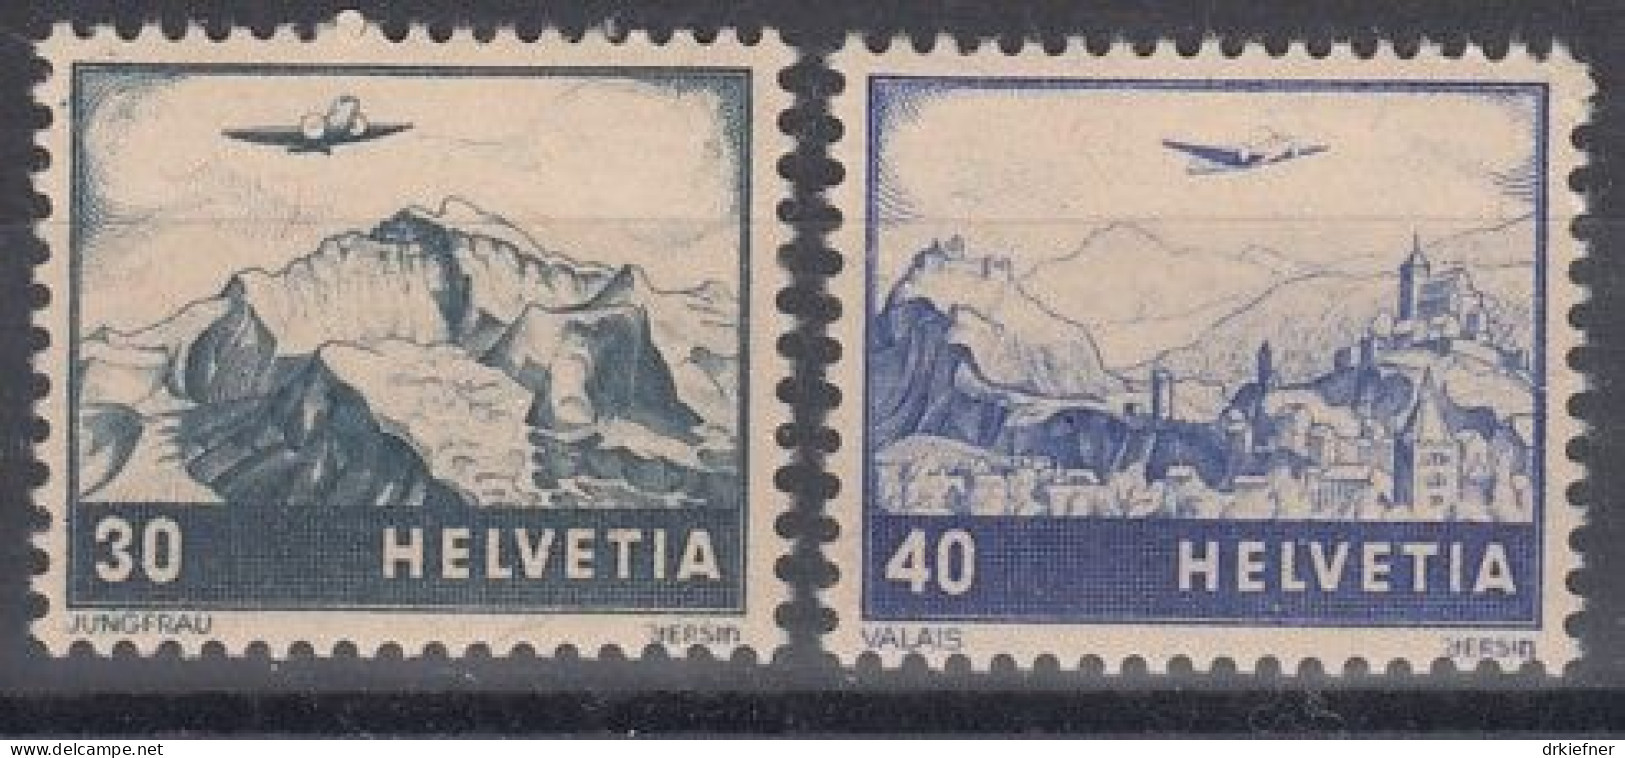 SCHWEIZ  506-507, Postfrisch **, Flugzeug über Landschaft, 1948 - Unused Stamps